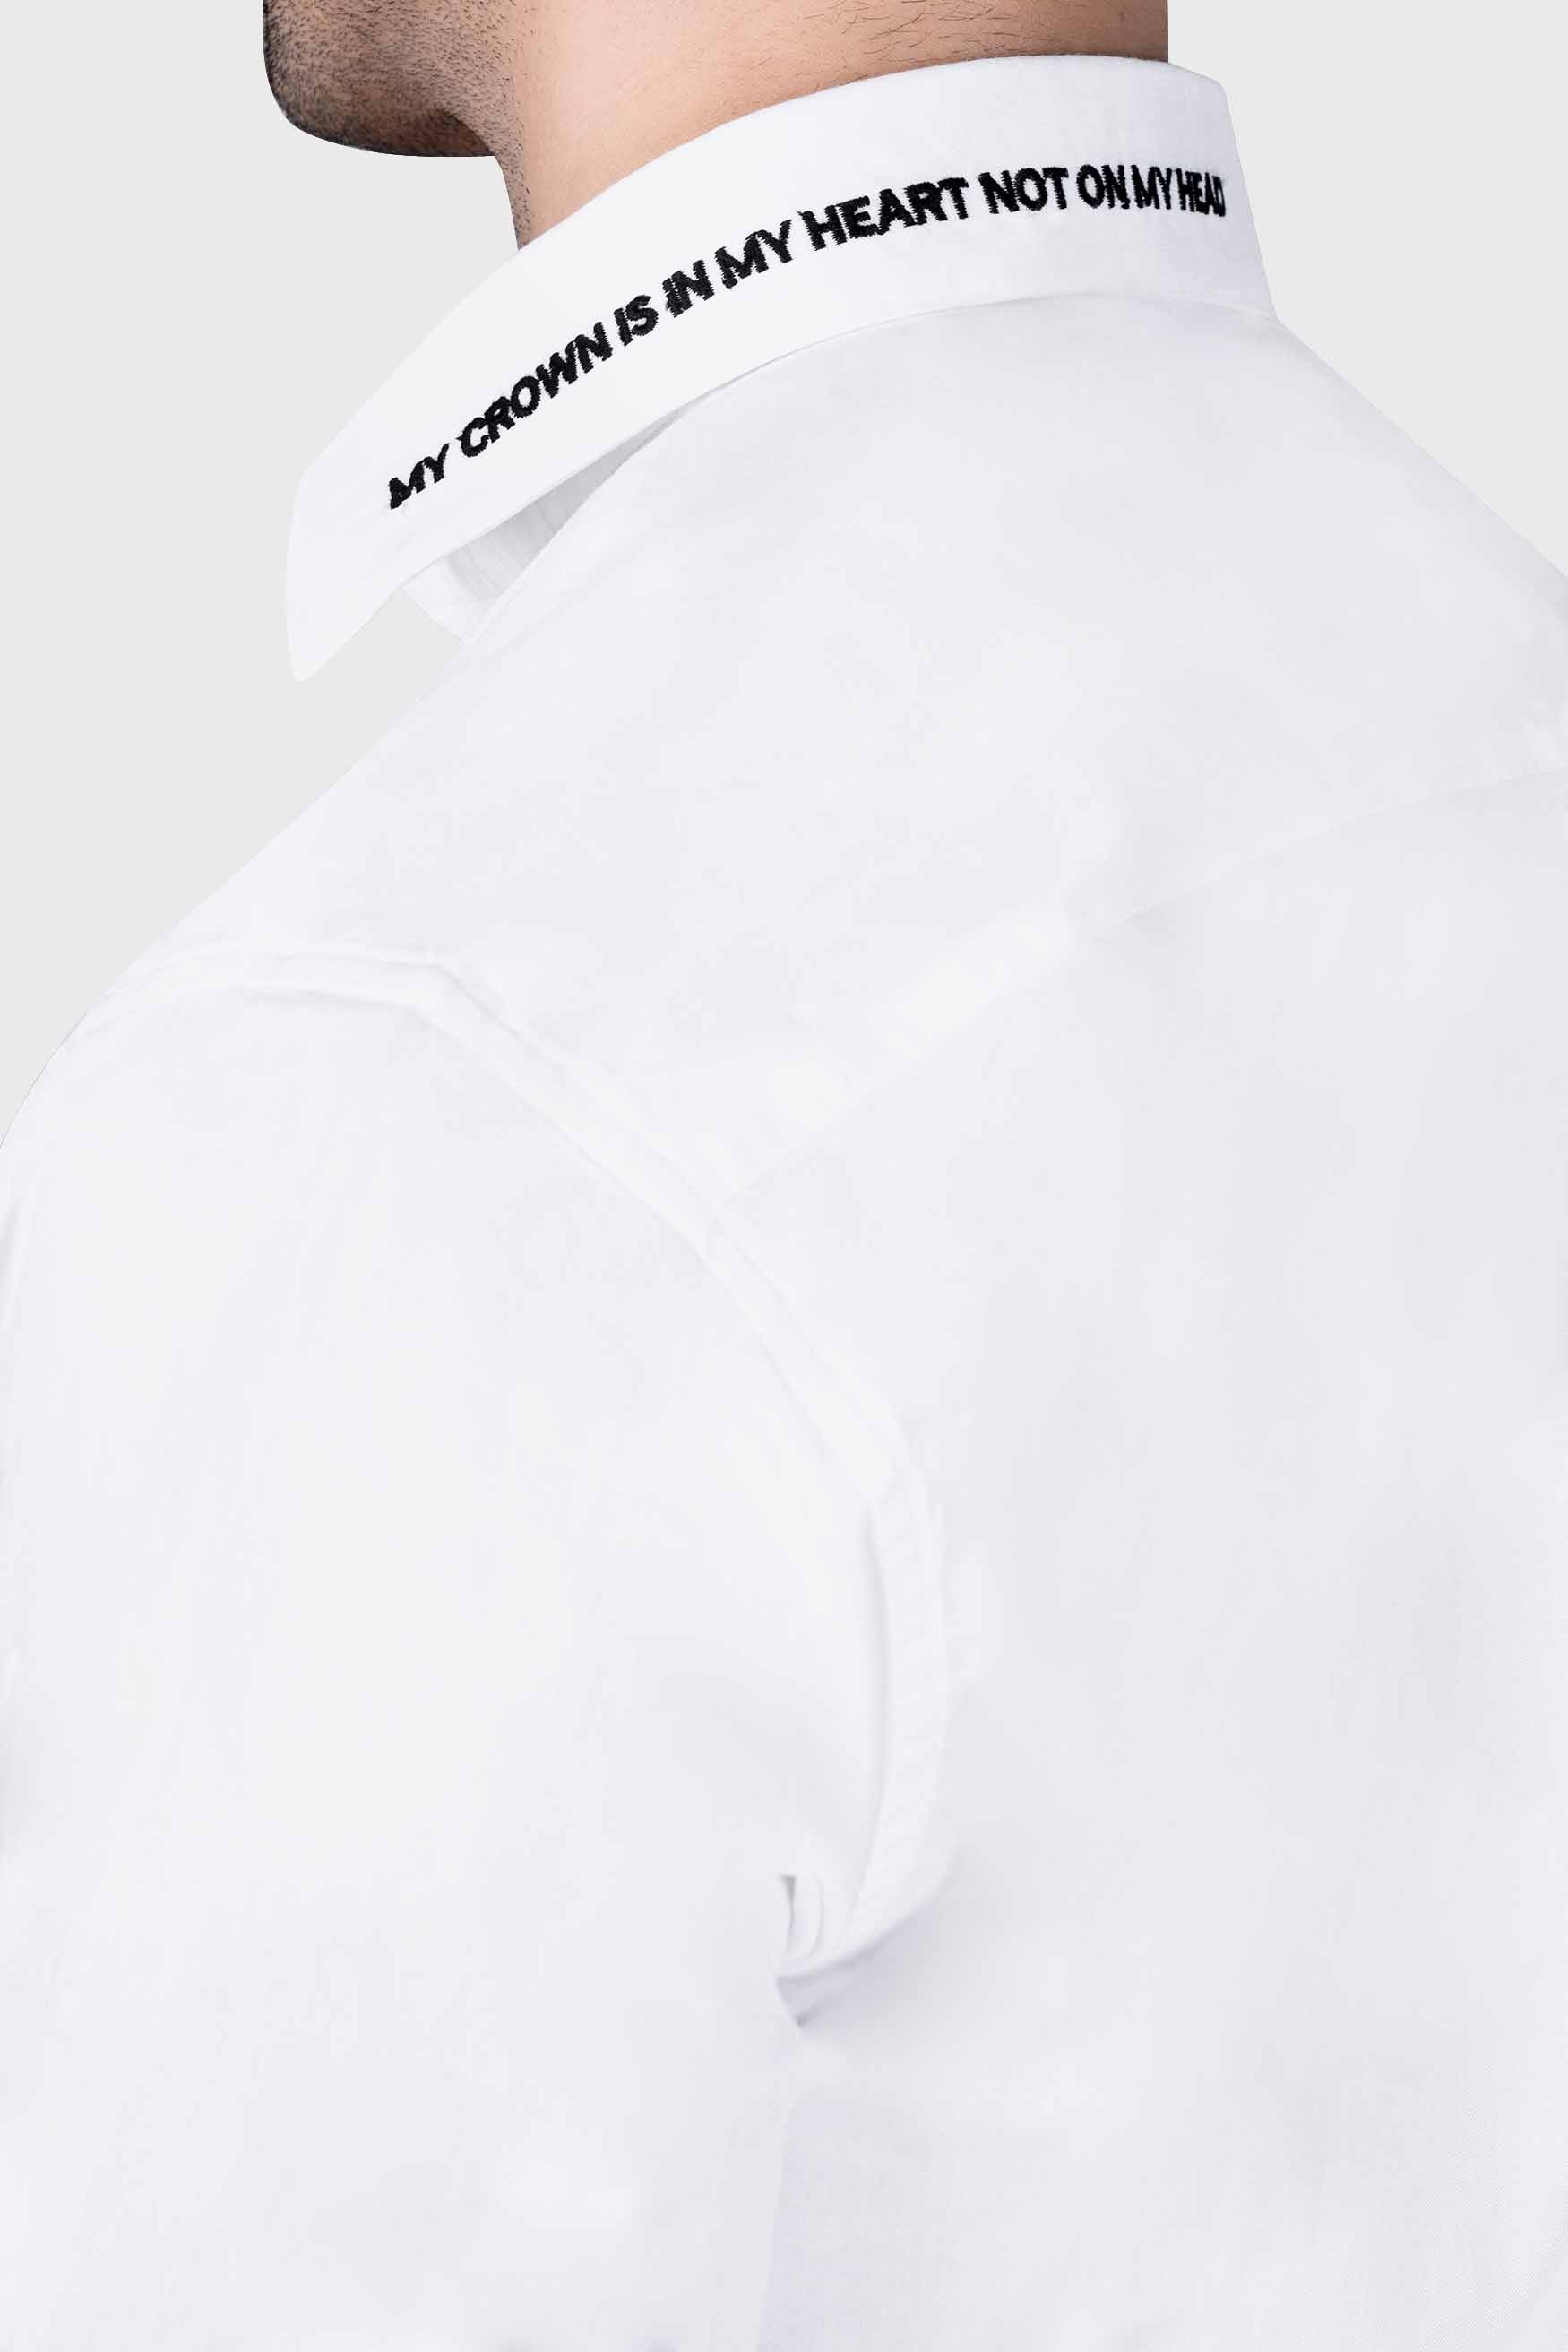 Bright White Quote Embroidered Subtle Sheen Super Soft Premium Cotton Designer Shirt 1062-BLK-E334-38, 1062-BLK-E334-H-38, 1062-BLK-E334-39, 1062-BLK-E334-H-39, 1062-BLK-E334-40, 1062-BLK-E334-H-40, 1062-BLK-E334-42, 1062-BLK-E334-H-42, 1062-BLK-E334-44, 1062-BLK-E334-H-44, 1062-BLK-E334-46, 1062-BLK-E334-H-46, 1062-BLK-E334-48, 1062-BLK-E334-H-48, 1062-BLK-E334-50, 1062-BLK-E334-H-50, 1062-BLK-E334-52, 1062-BLK-E334-H-52